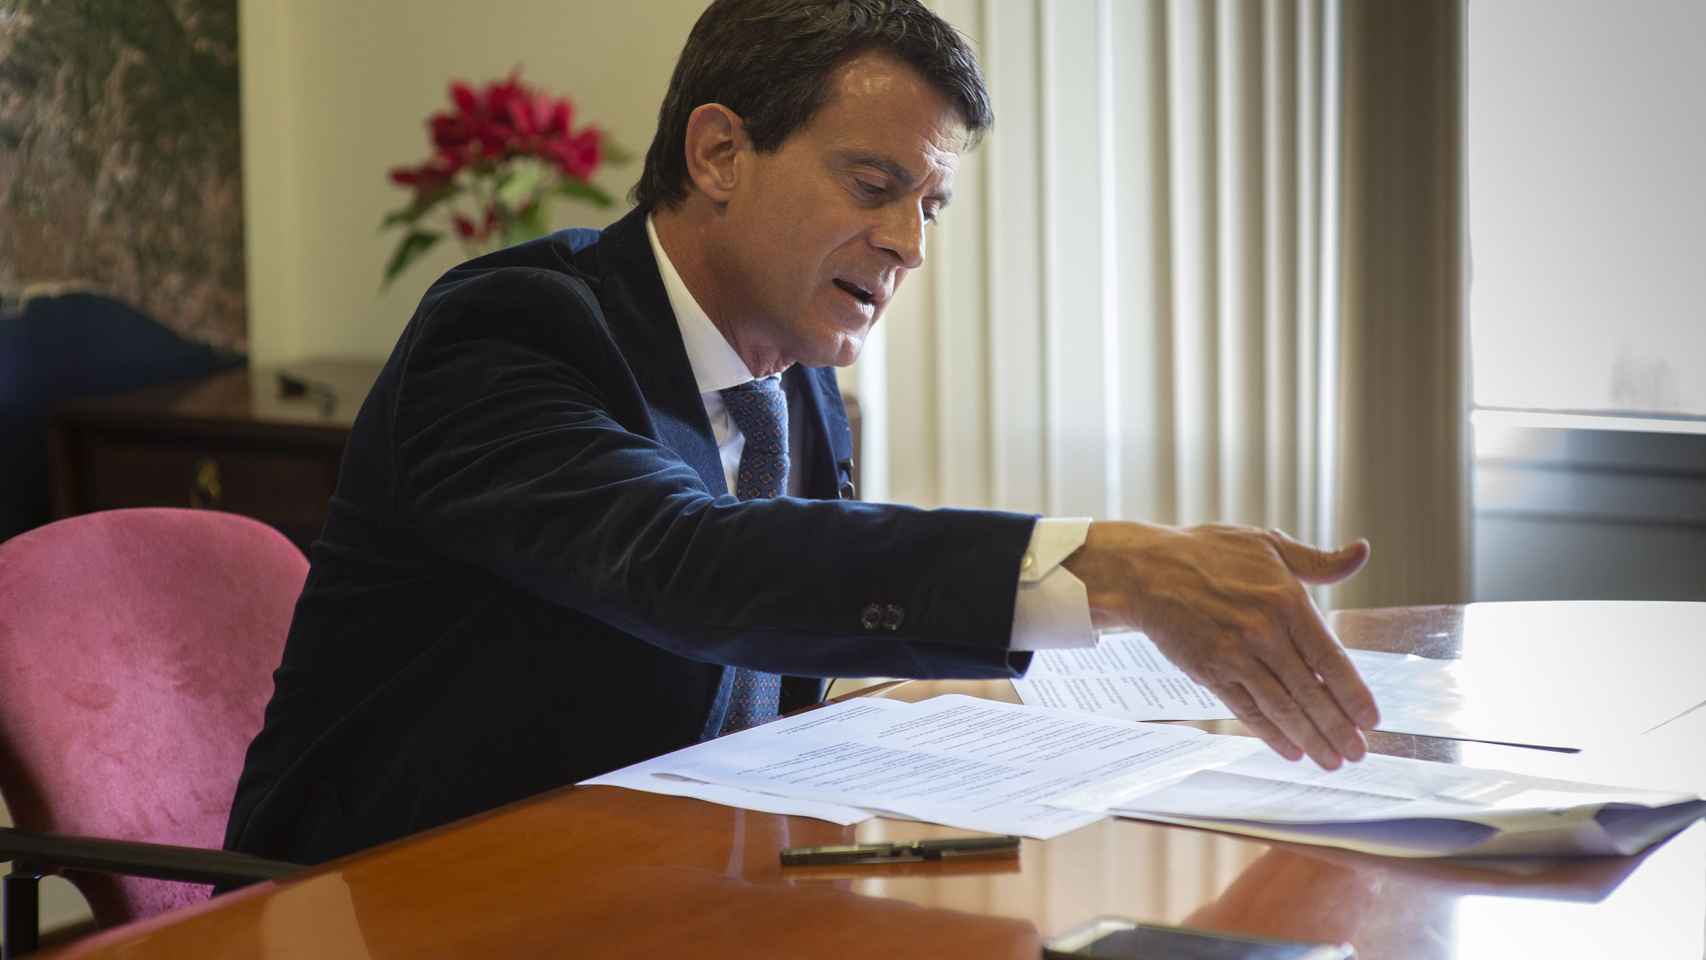 El candidato a la alcaldía de Barcelona, Manuel Valls, durante la entrevista con Metrópoli Abierta / LENA PRIETO